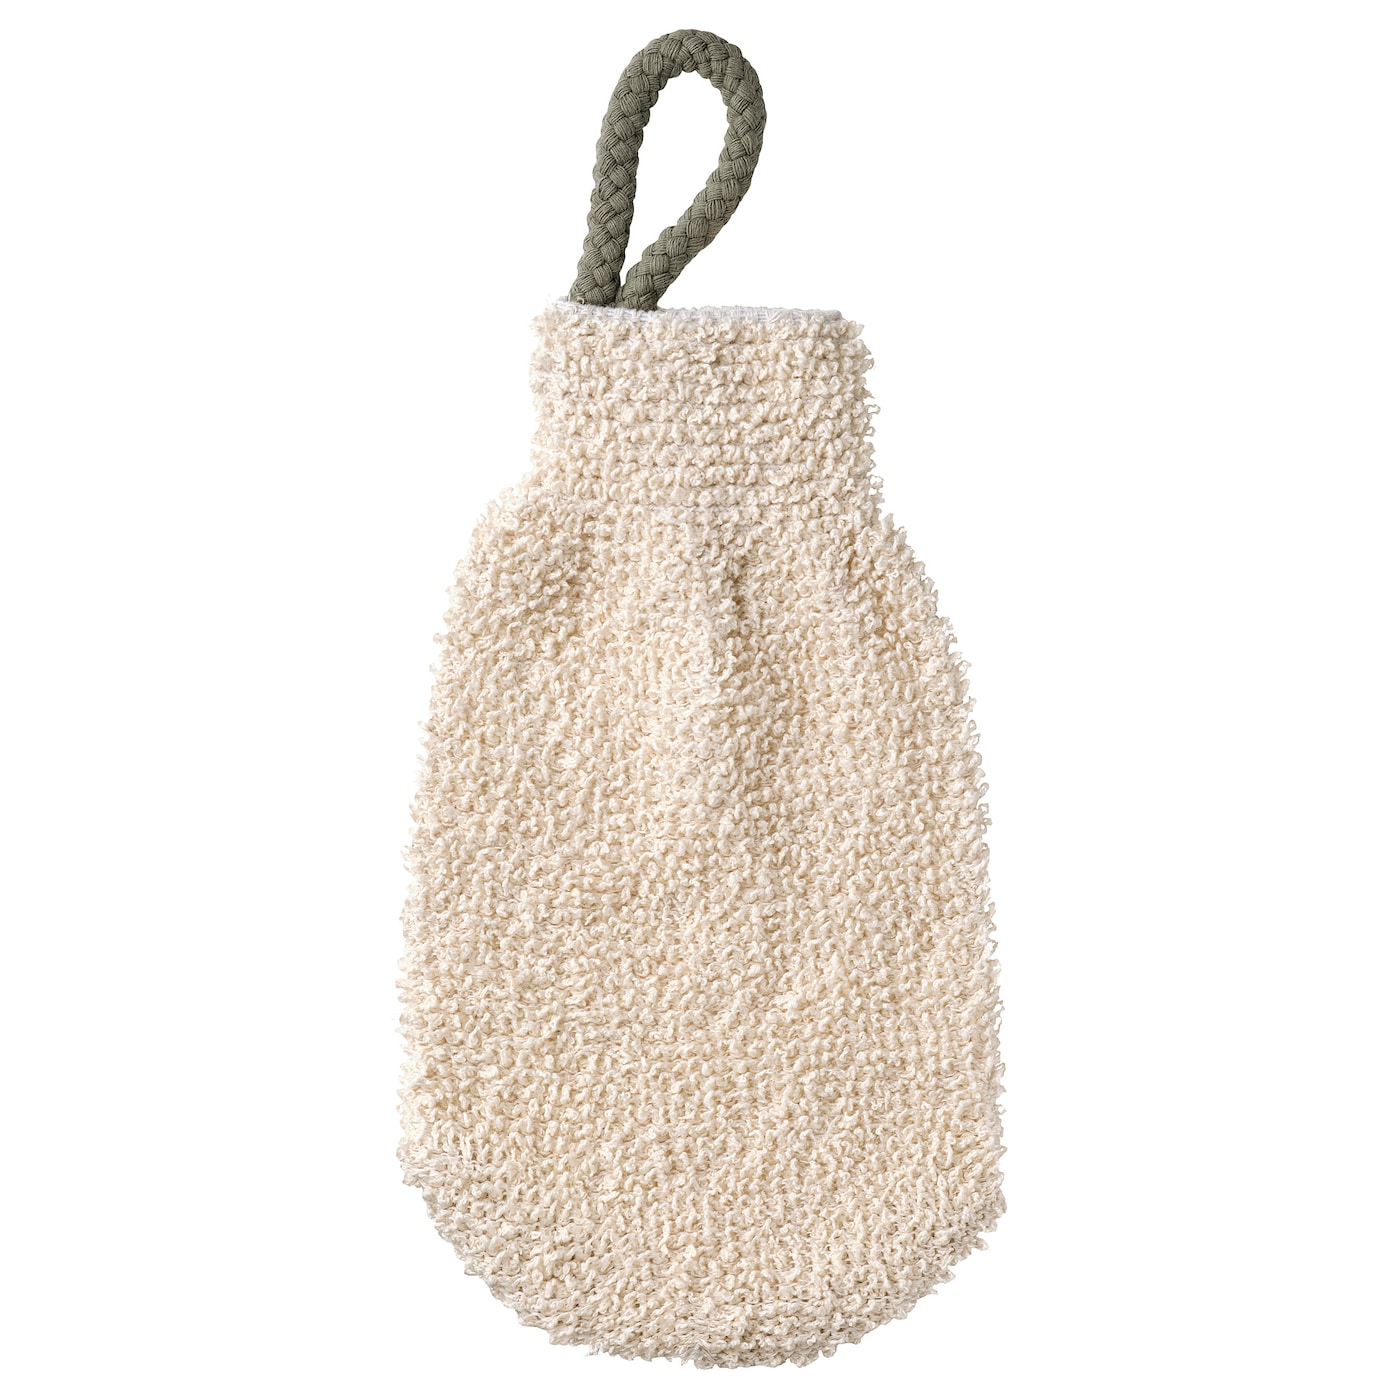 PRAKTPORTLAK Мочалка-рукавица, натуральный цвет IKEA губка варежка для мытья машины 22х15 см